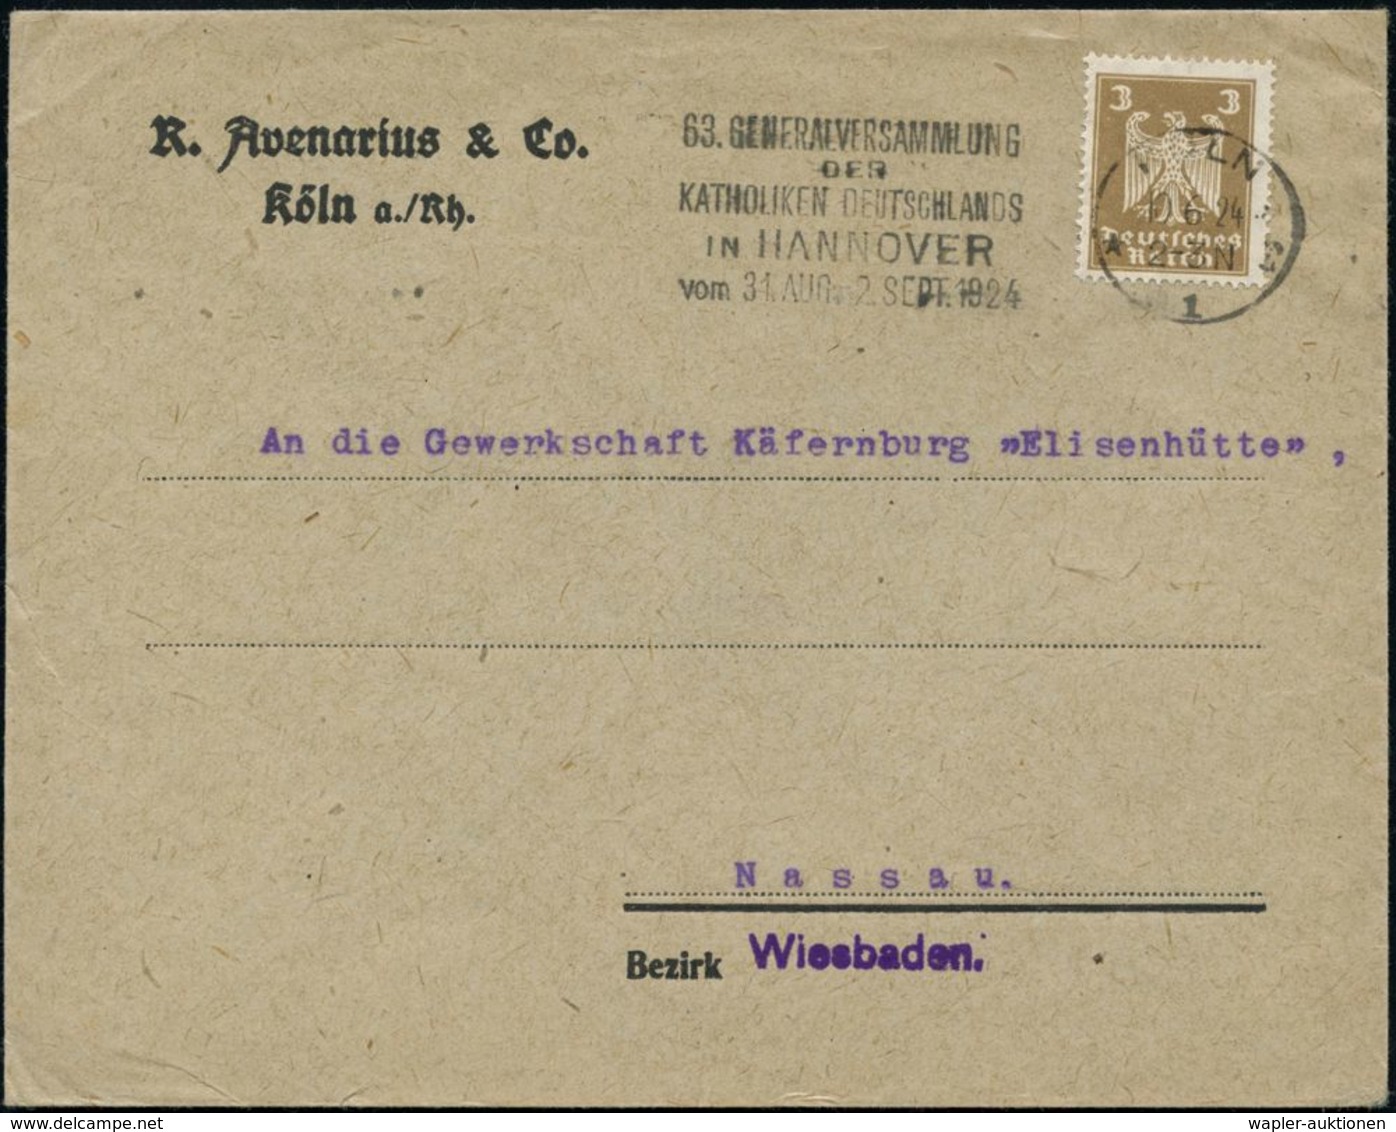 KIRCHENTAGE & KIRCHENKONGRESSE : KÖLN/ *1r/ 63.GENERALVERSAMMLUNG/ DER/ KATHOLIKEN DEUTSCHLANDS/ IN HANNOVER.. 1924 (18. - Christianity